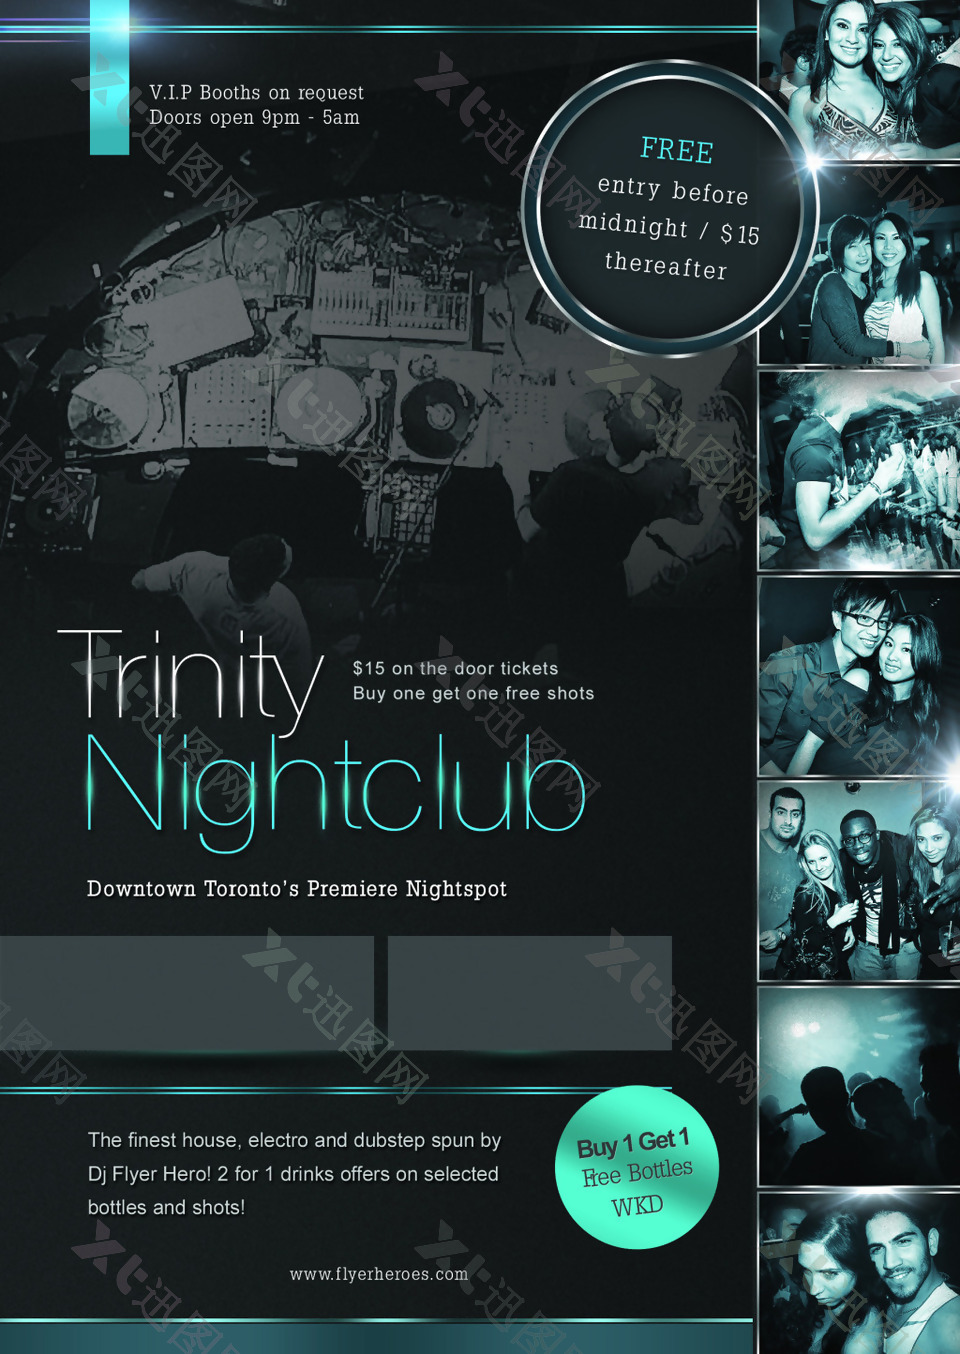 Trinity-Nightclub国外创意欧美风酒吧宣传海报宣传单页